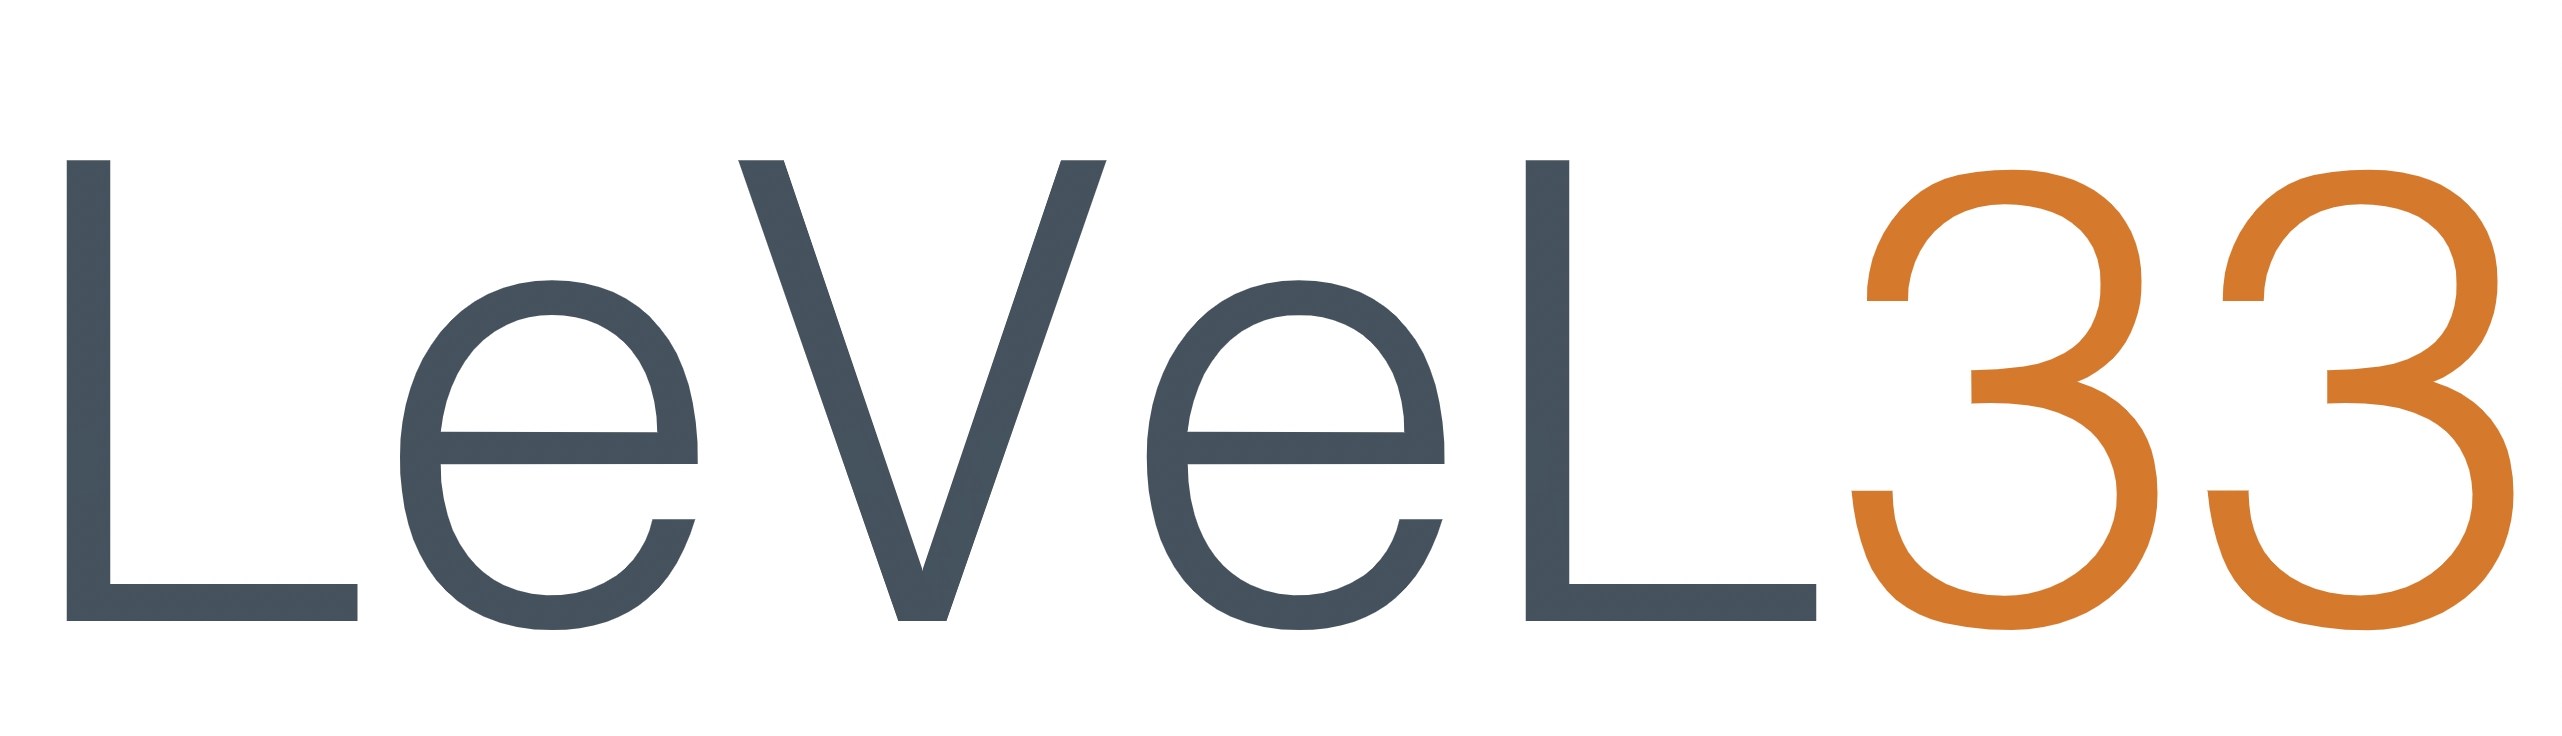 LeVeL 33 logo